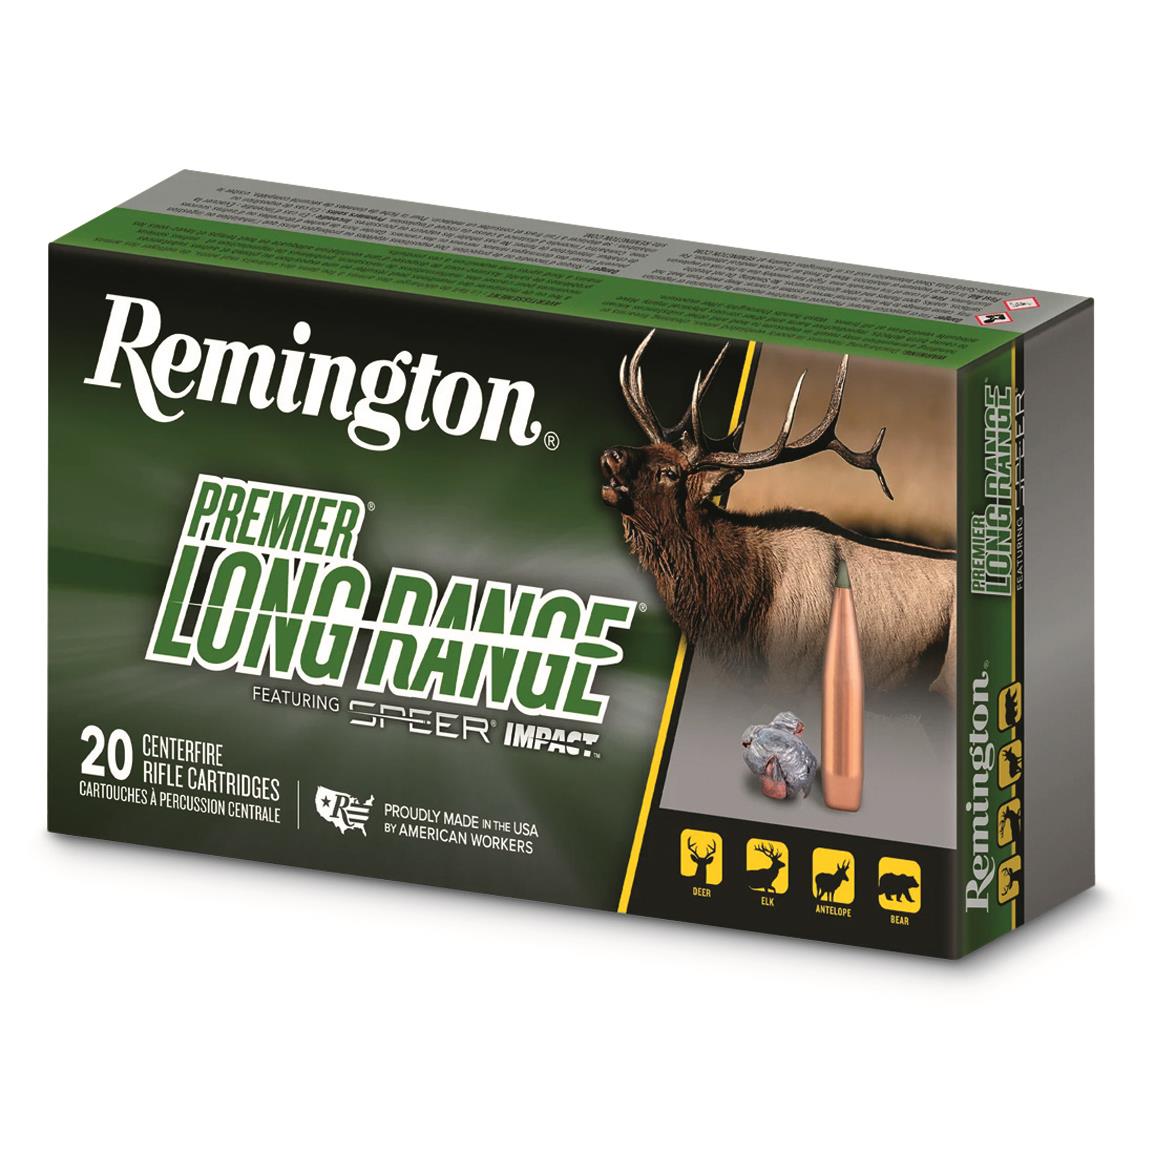 Remington Premier Long Range, 6.5 PRC, Speer Impact, 140 Grain, 20 Rounds